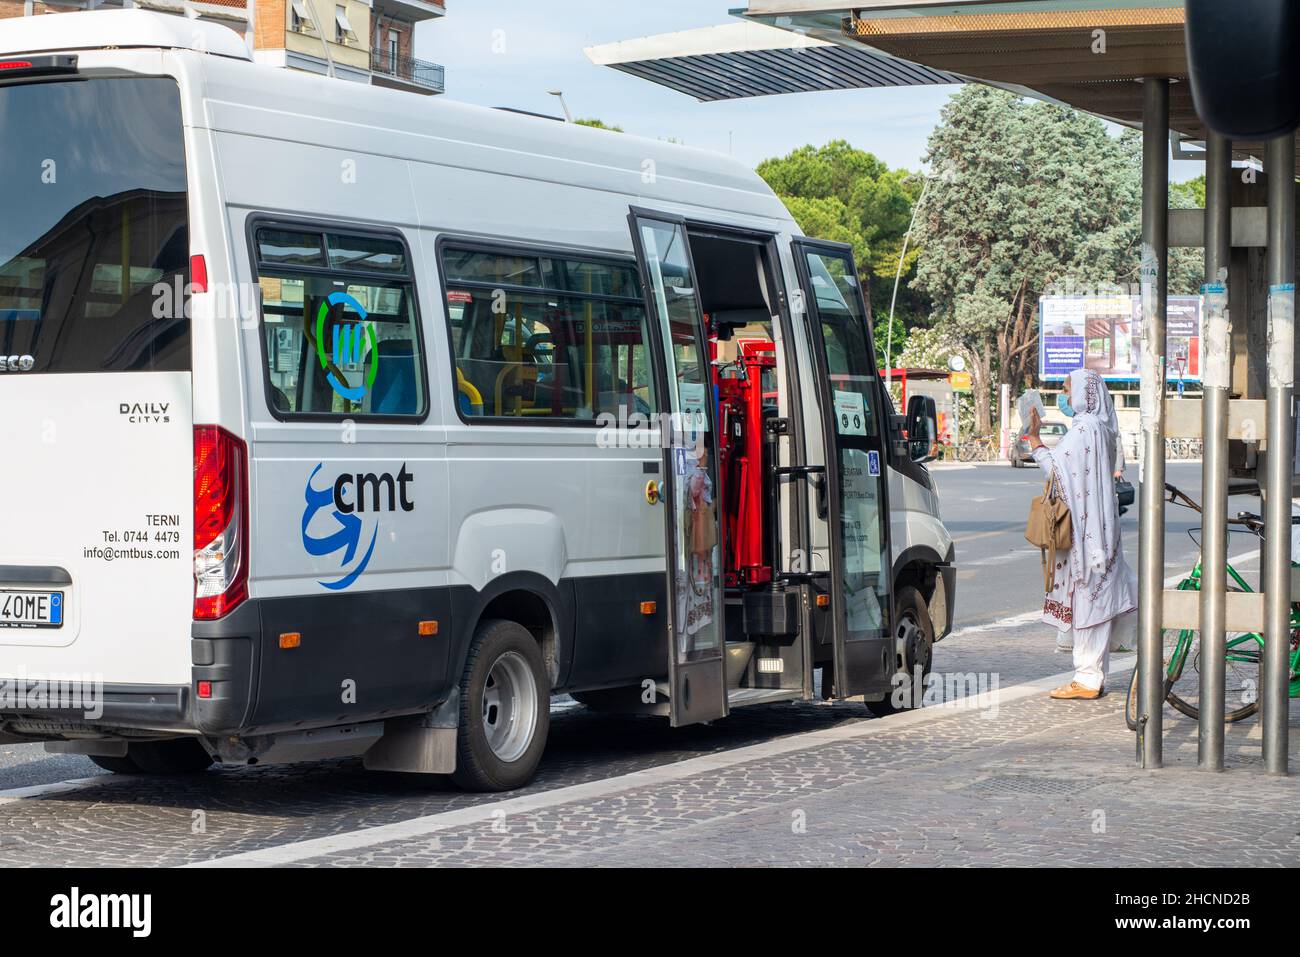 terni, italia maggio 29 2020:bus di una cooperativa locale e straniera donna chiedendo informazioni con maschera per la coovid emergenza Foto Stock